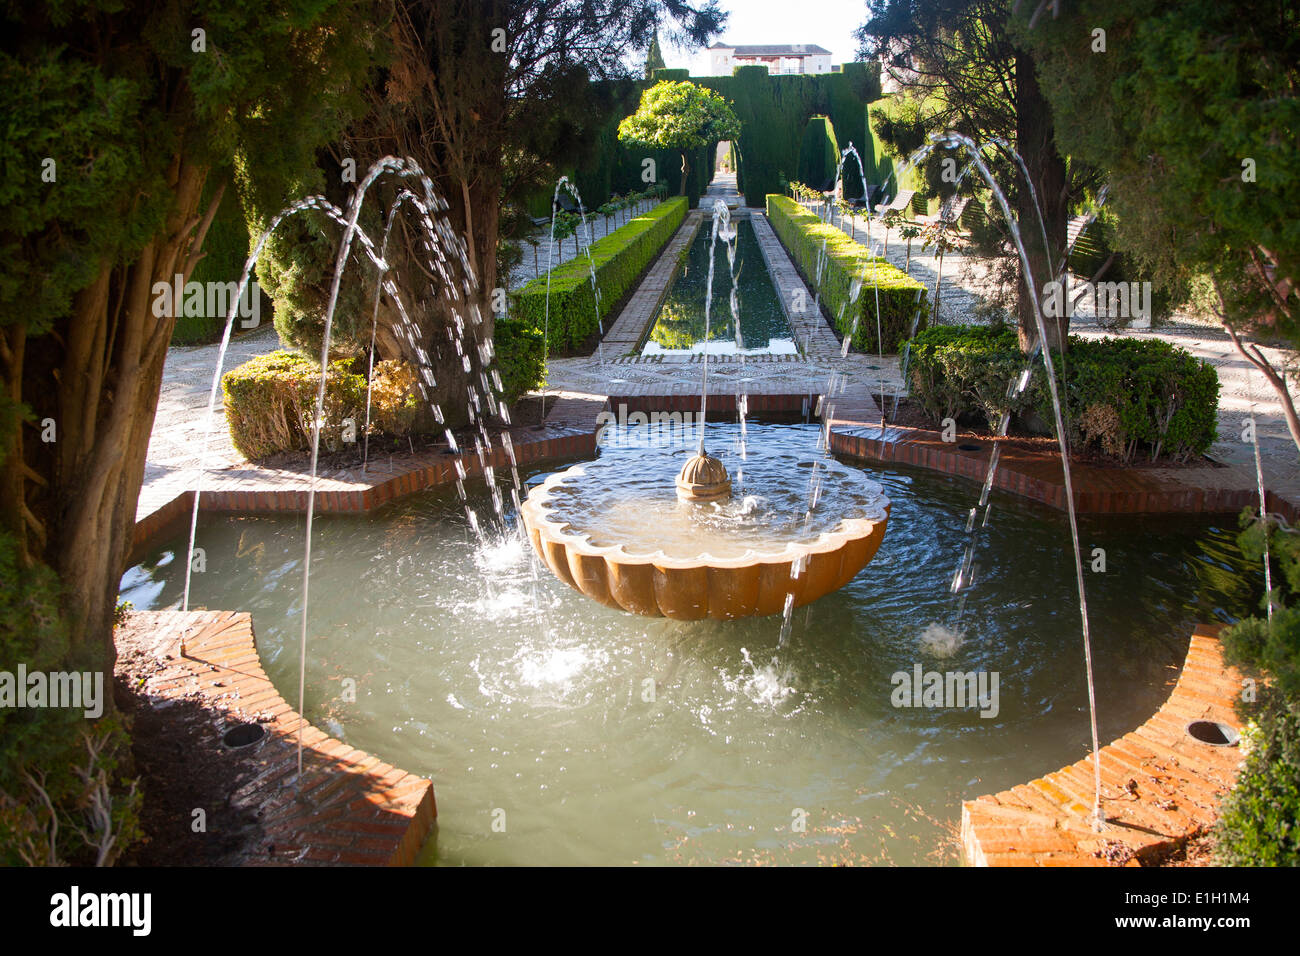 Fontane ad acqua, abbassare il Generalife palace gardens, Alhambra di Granada, Spagna Foto Stock